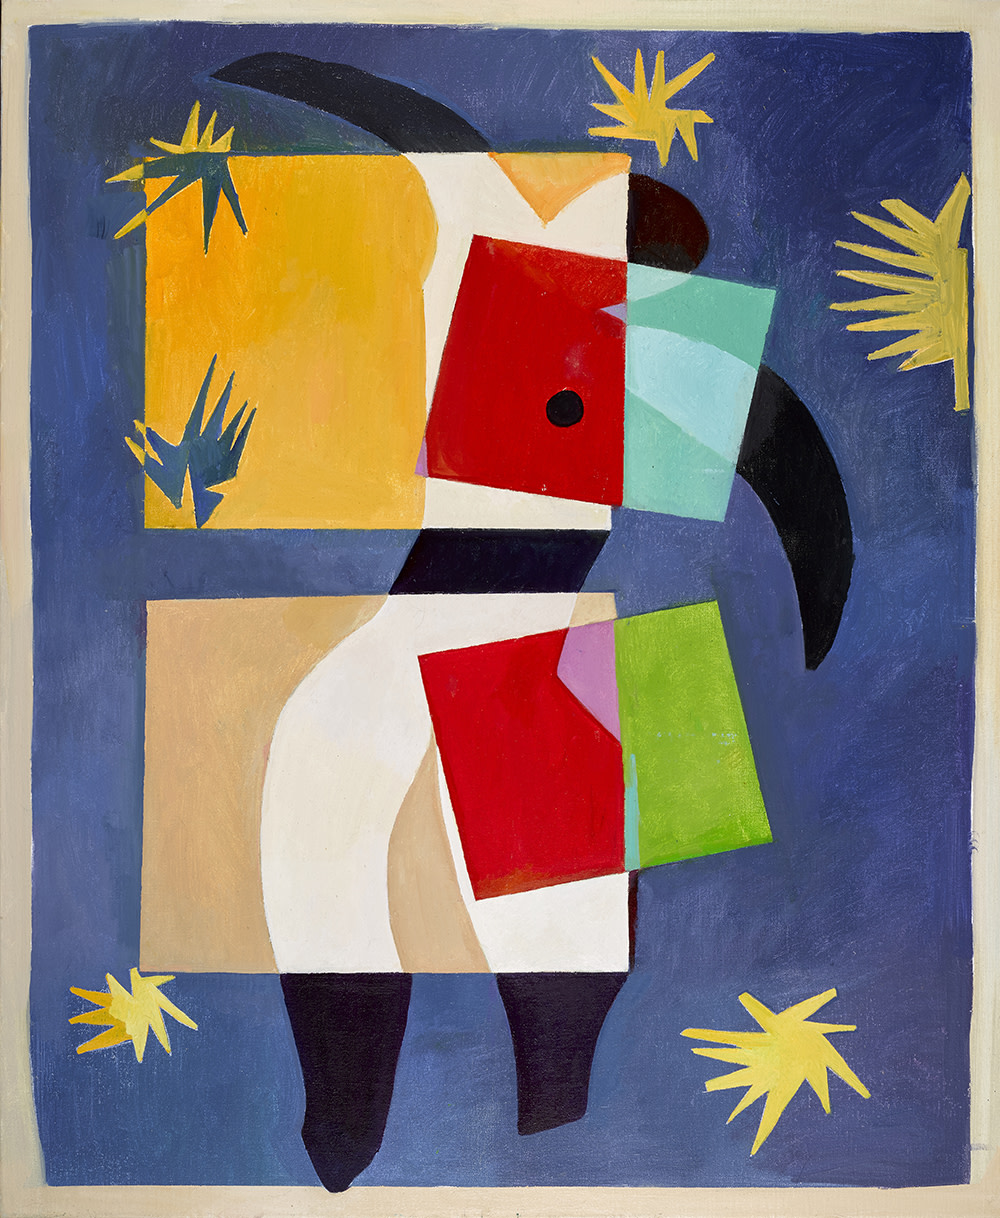 Wolfe von Lenkiewicz, Matisse, 2017